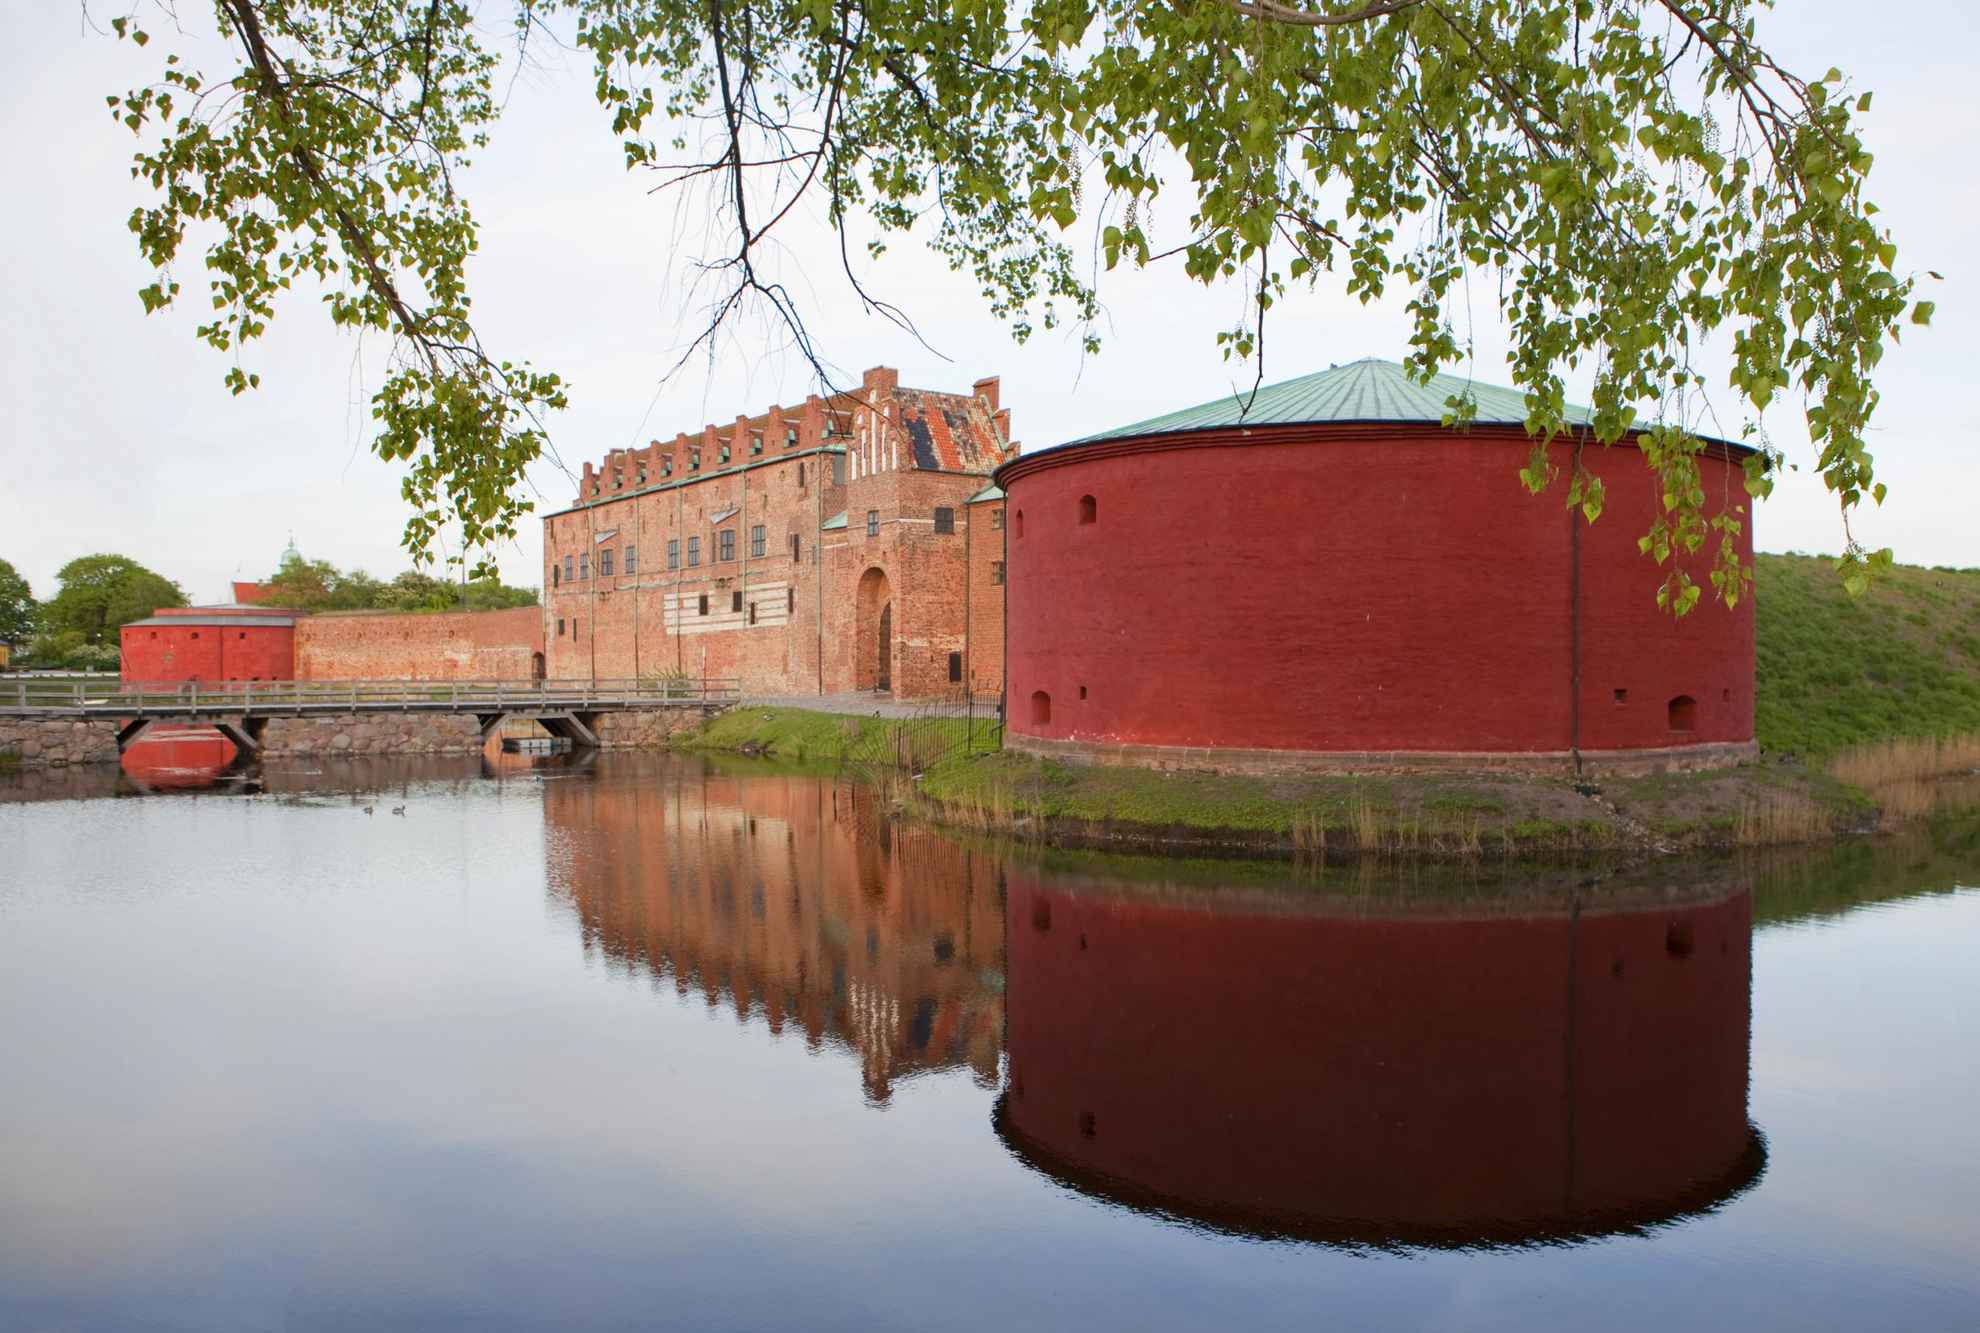 Le château de Malmöhus se compose d'une grande tour ronde avec à côté, un grand bâtiment en brique. Le château est entouré d'eau. En arrière-plan, on aperçoit une autre tour ronde de l'autre côté du bâtiment. Du feuillage se trouve au premier-plan.